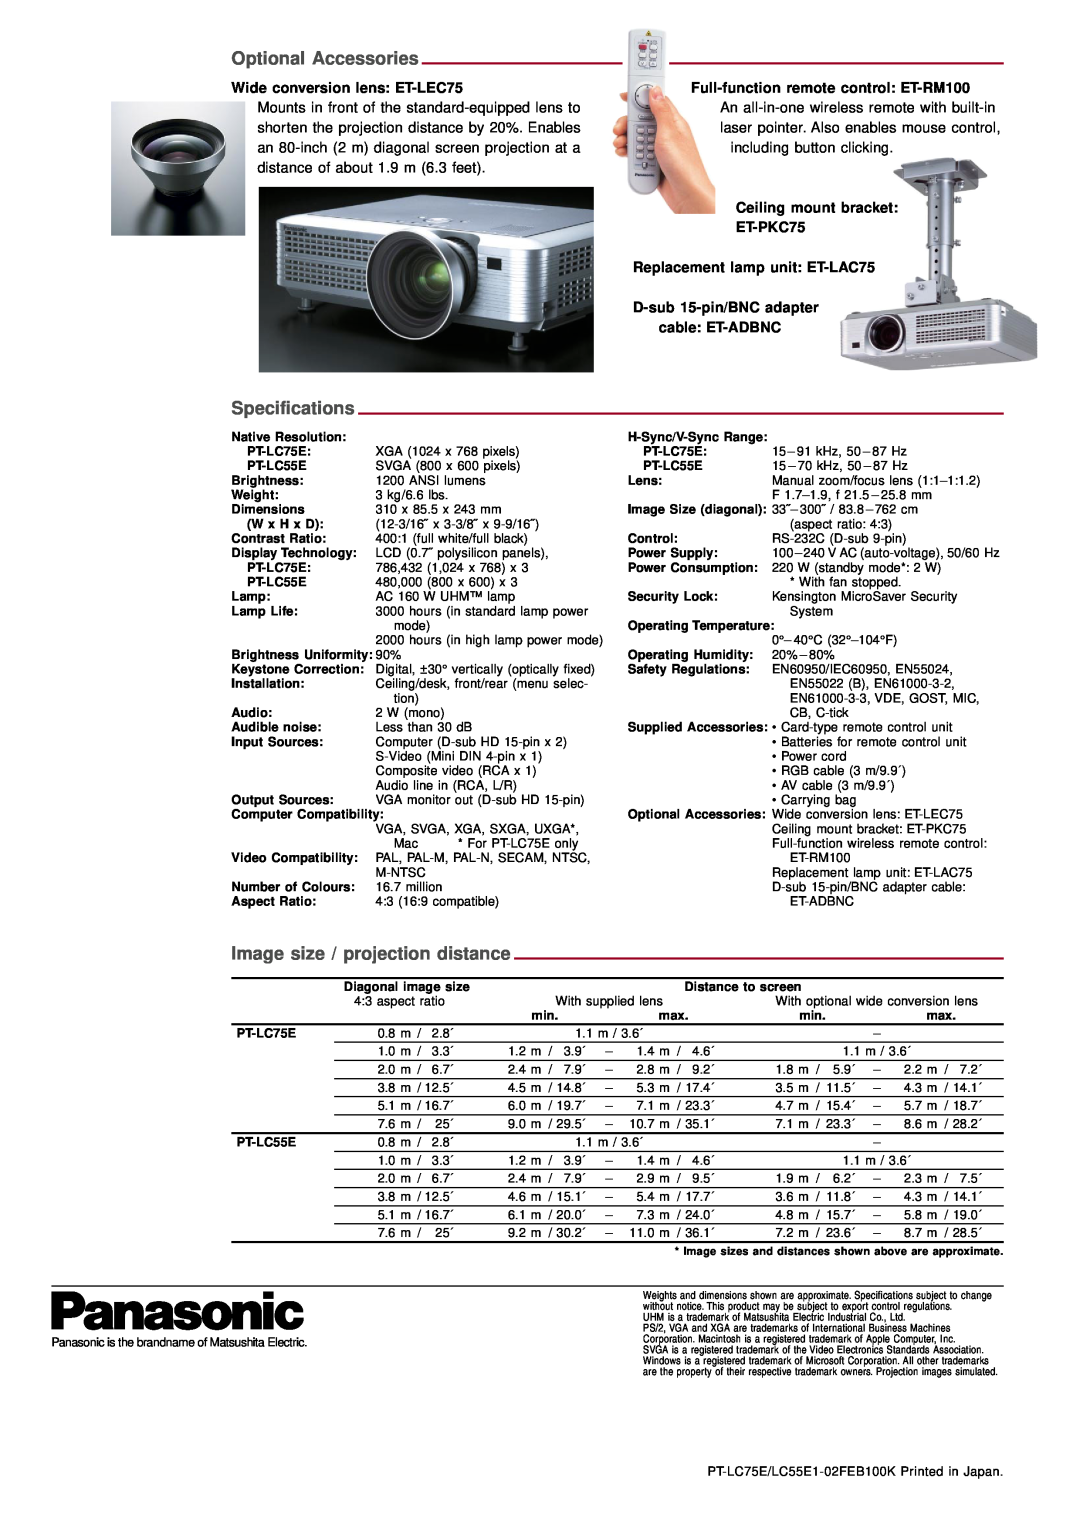 Panasonic PT-LC55E Optional Accessories, Specifications, Image size / projection distance, Wide conversion lens ET-LEC75 